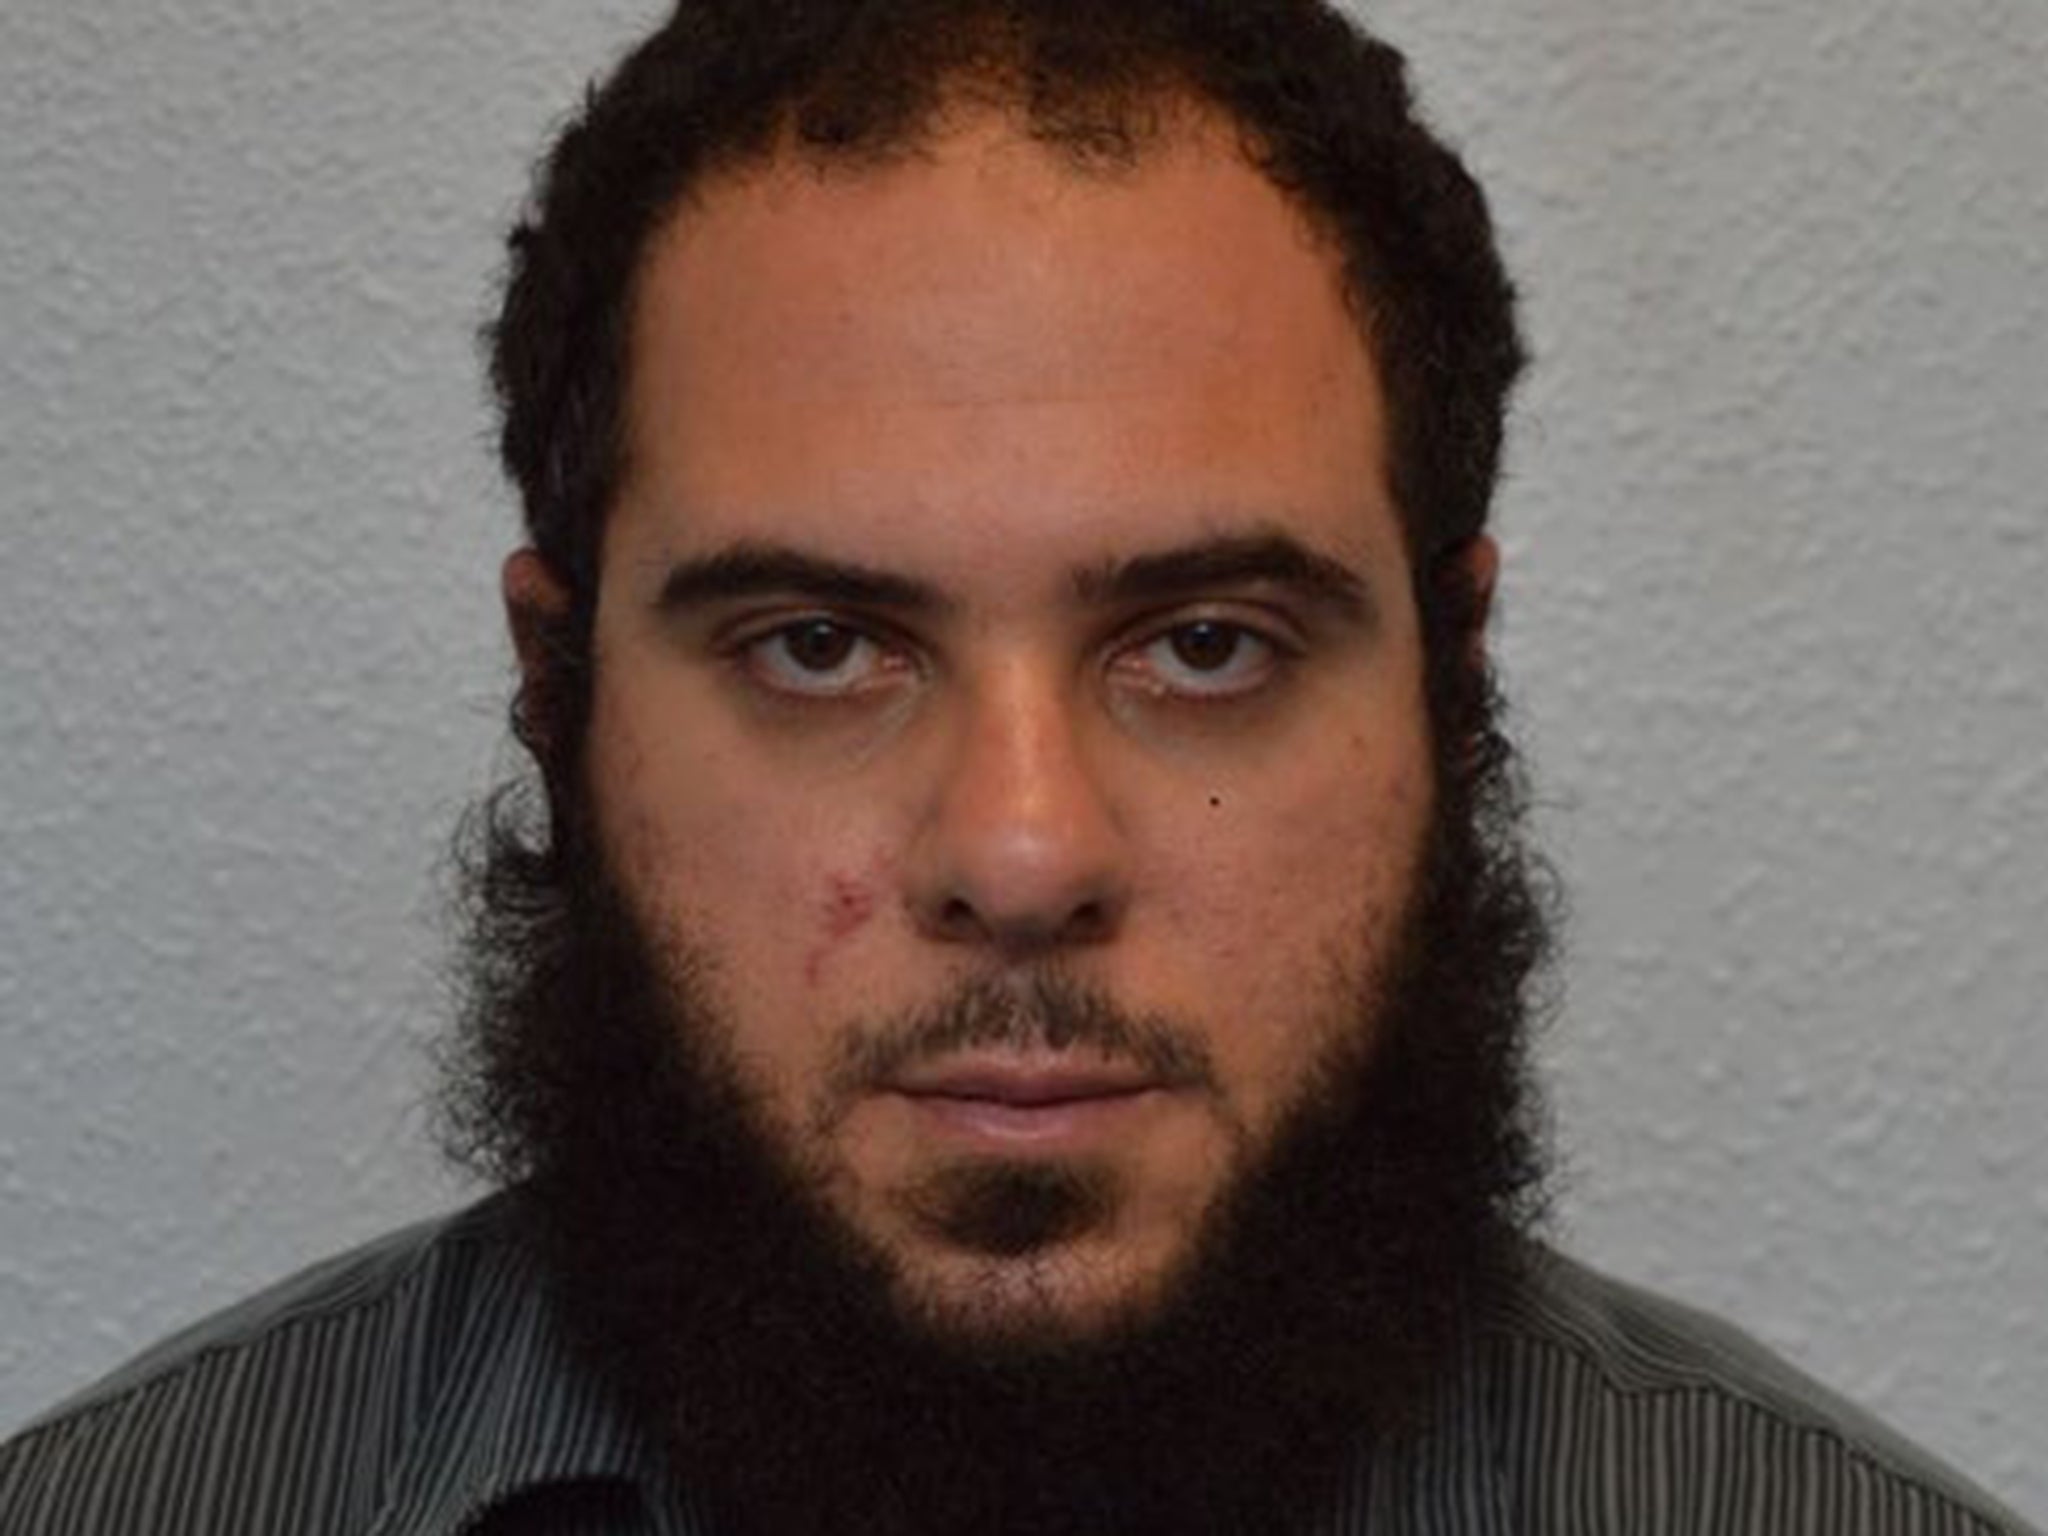 Feras Al-Jayoosi was handed a suspended prison sentence